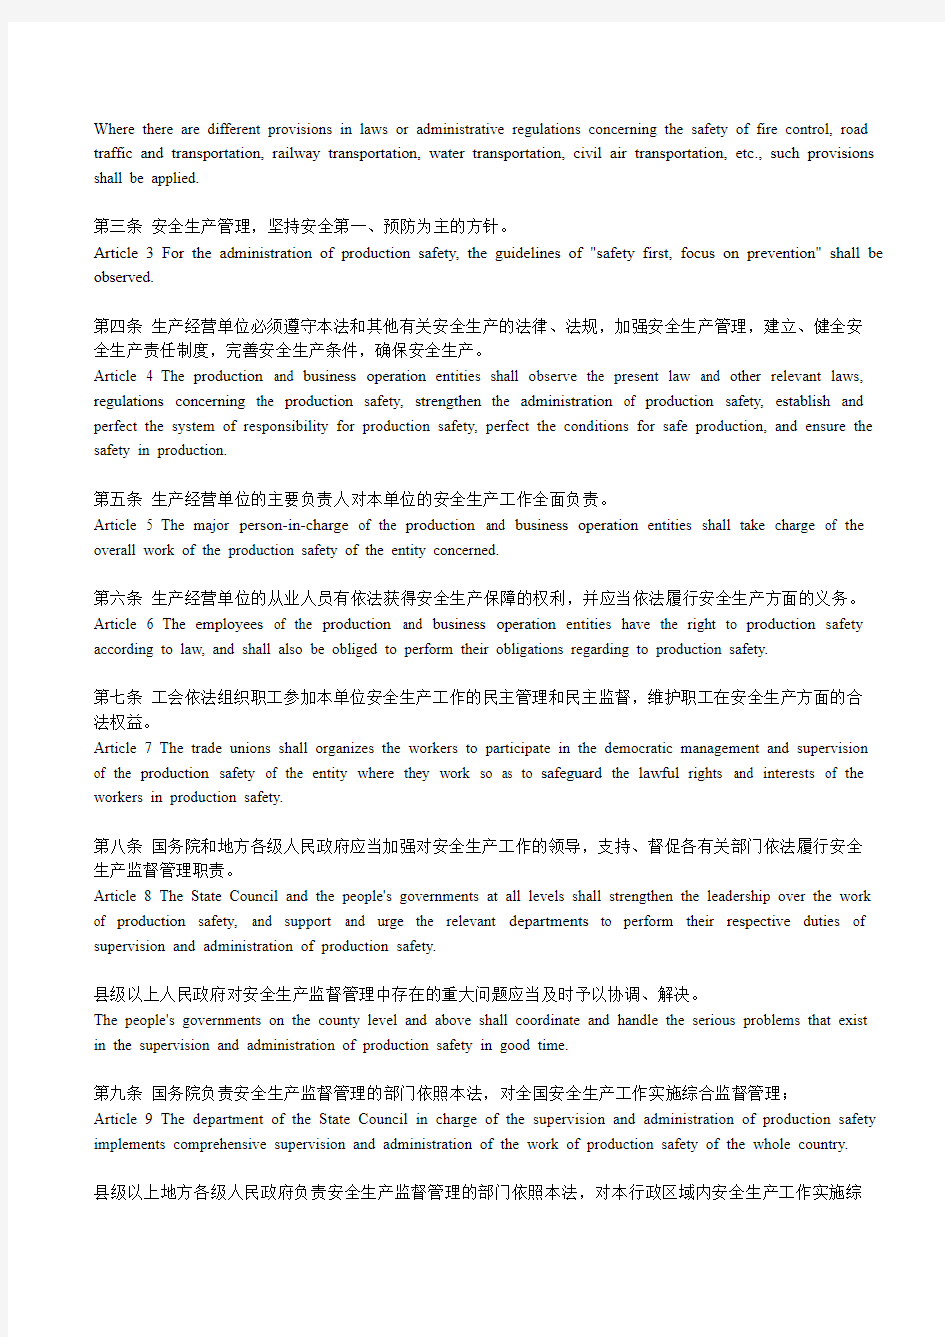 中华人民共和国安全生产法(中英对照版)